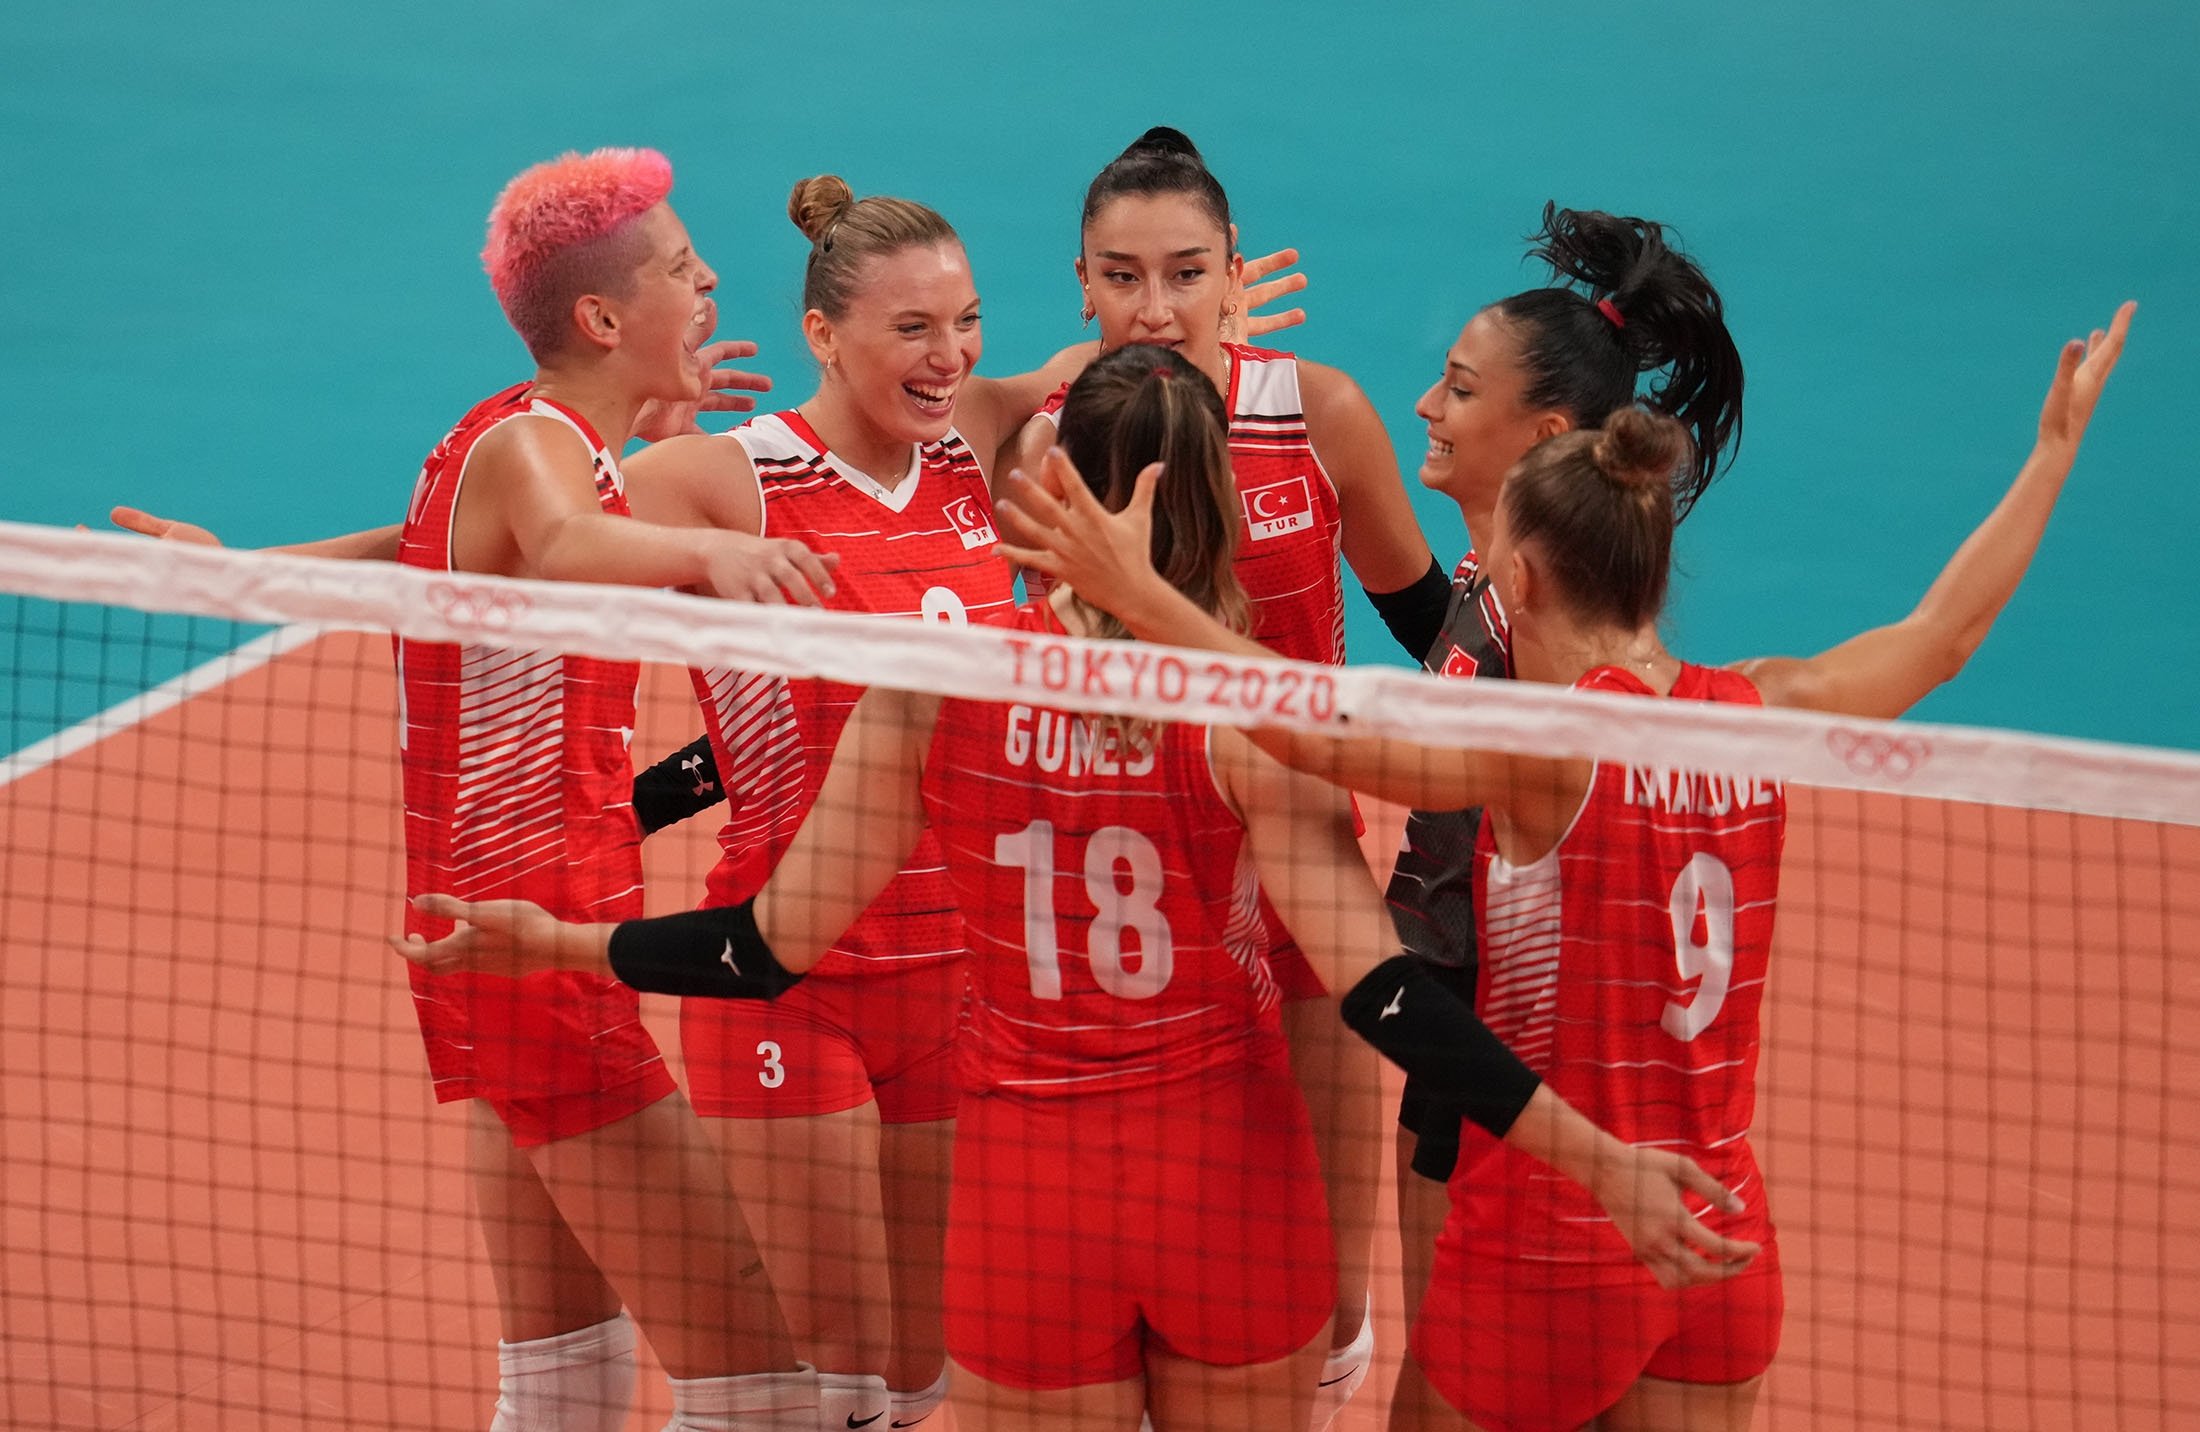 Turkey's women's volleyball team reaches Tokyo 2020 quarterfinals